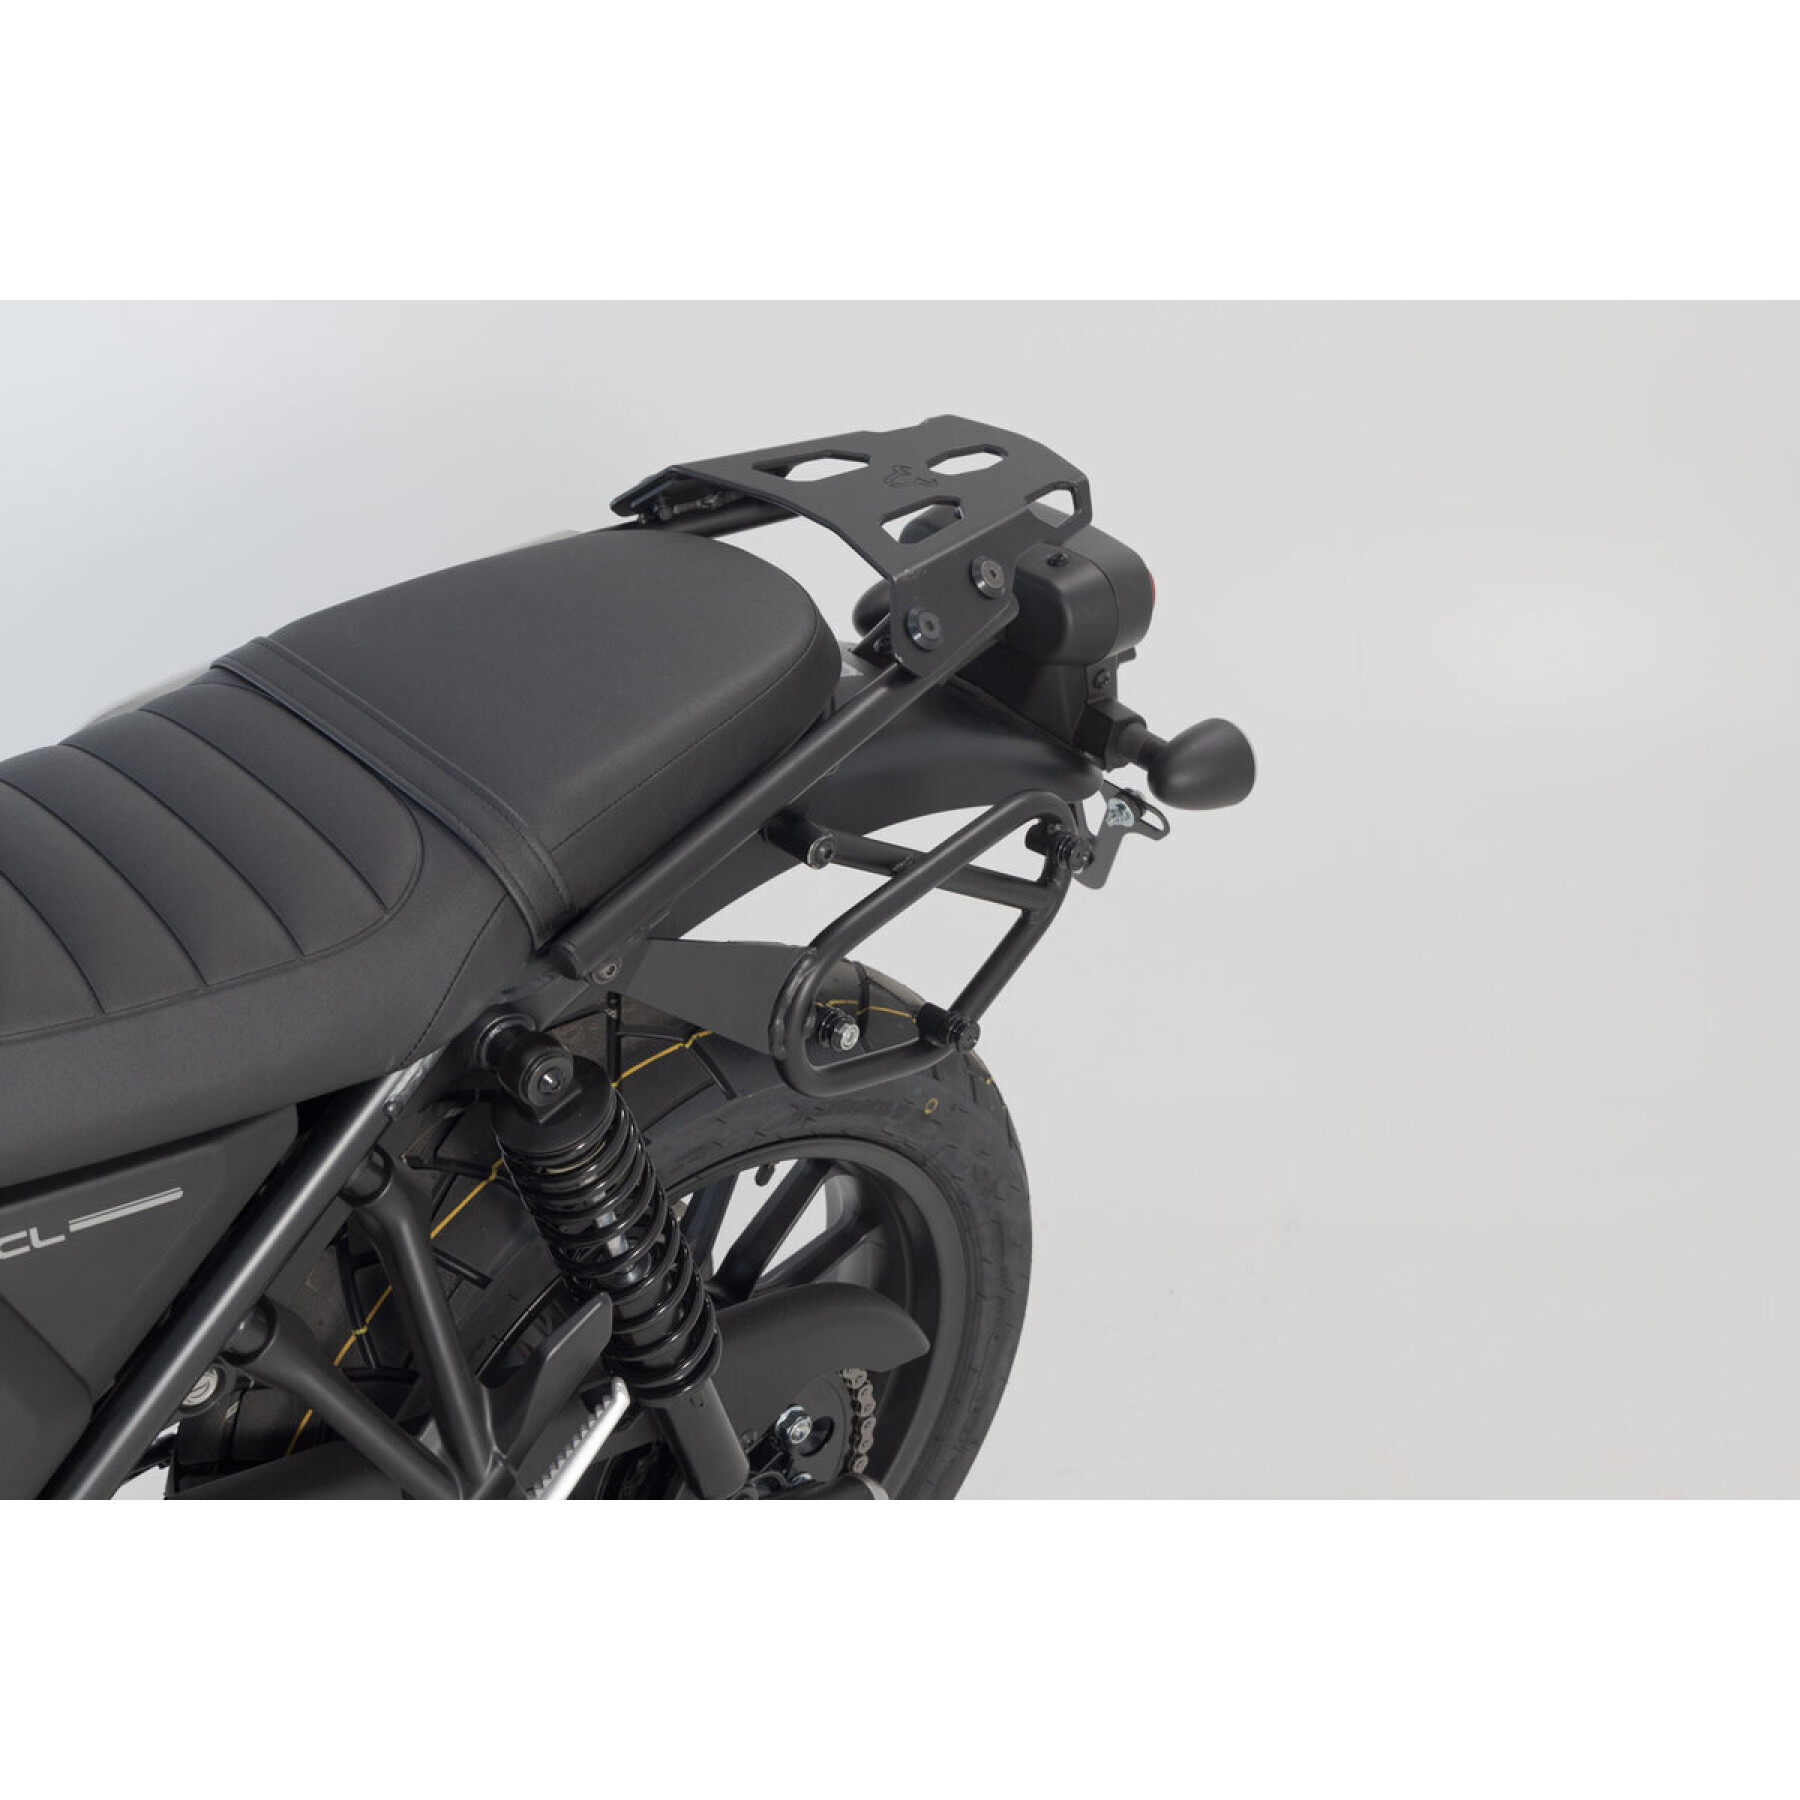 Motorcycle bag holder kft SW-Motech SysBag WP.